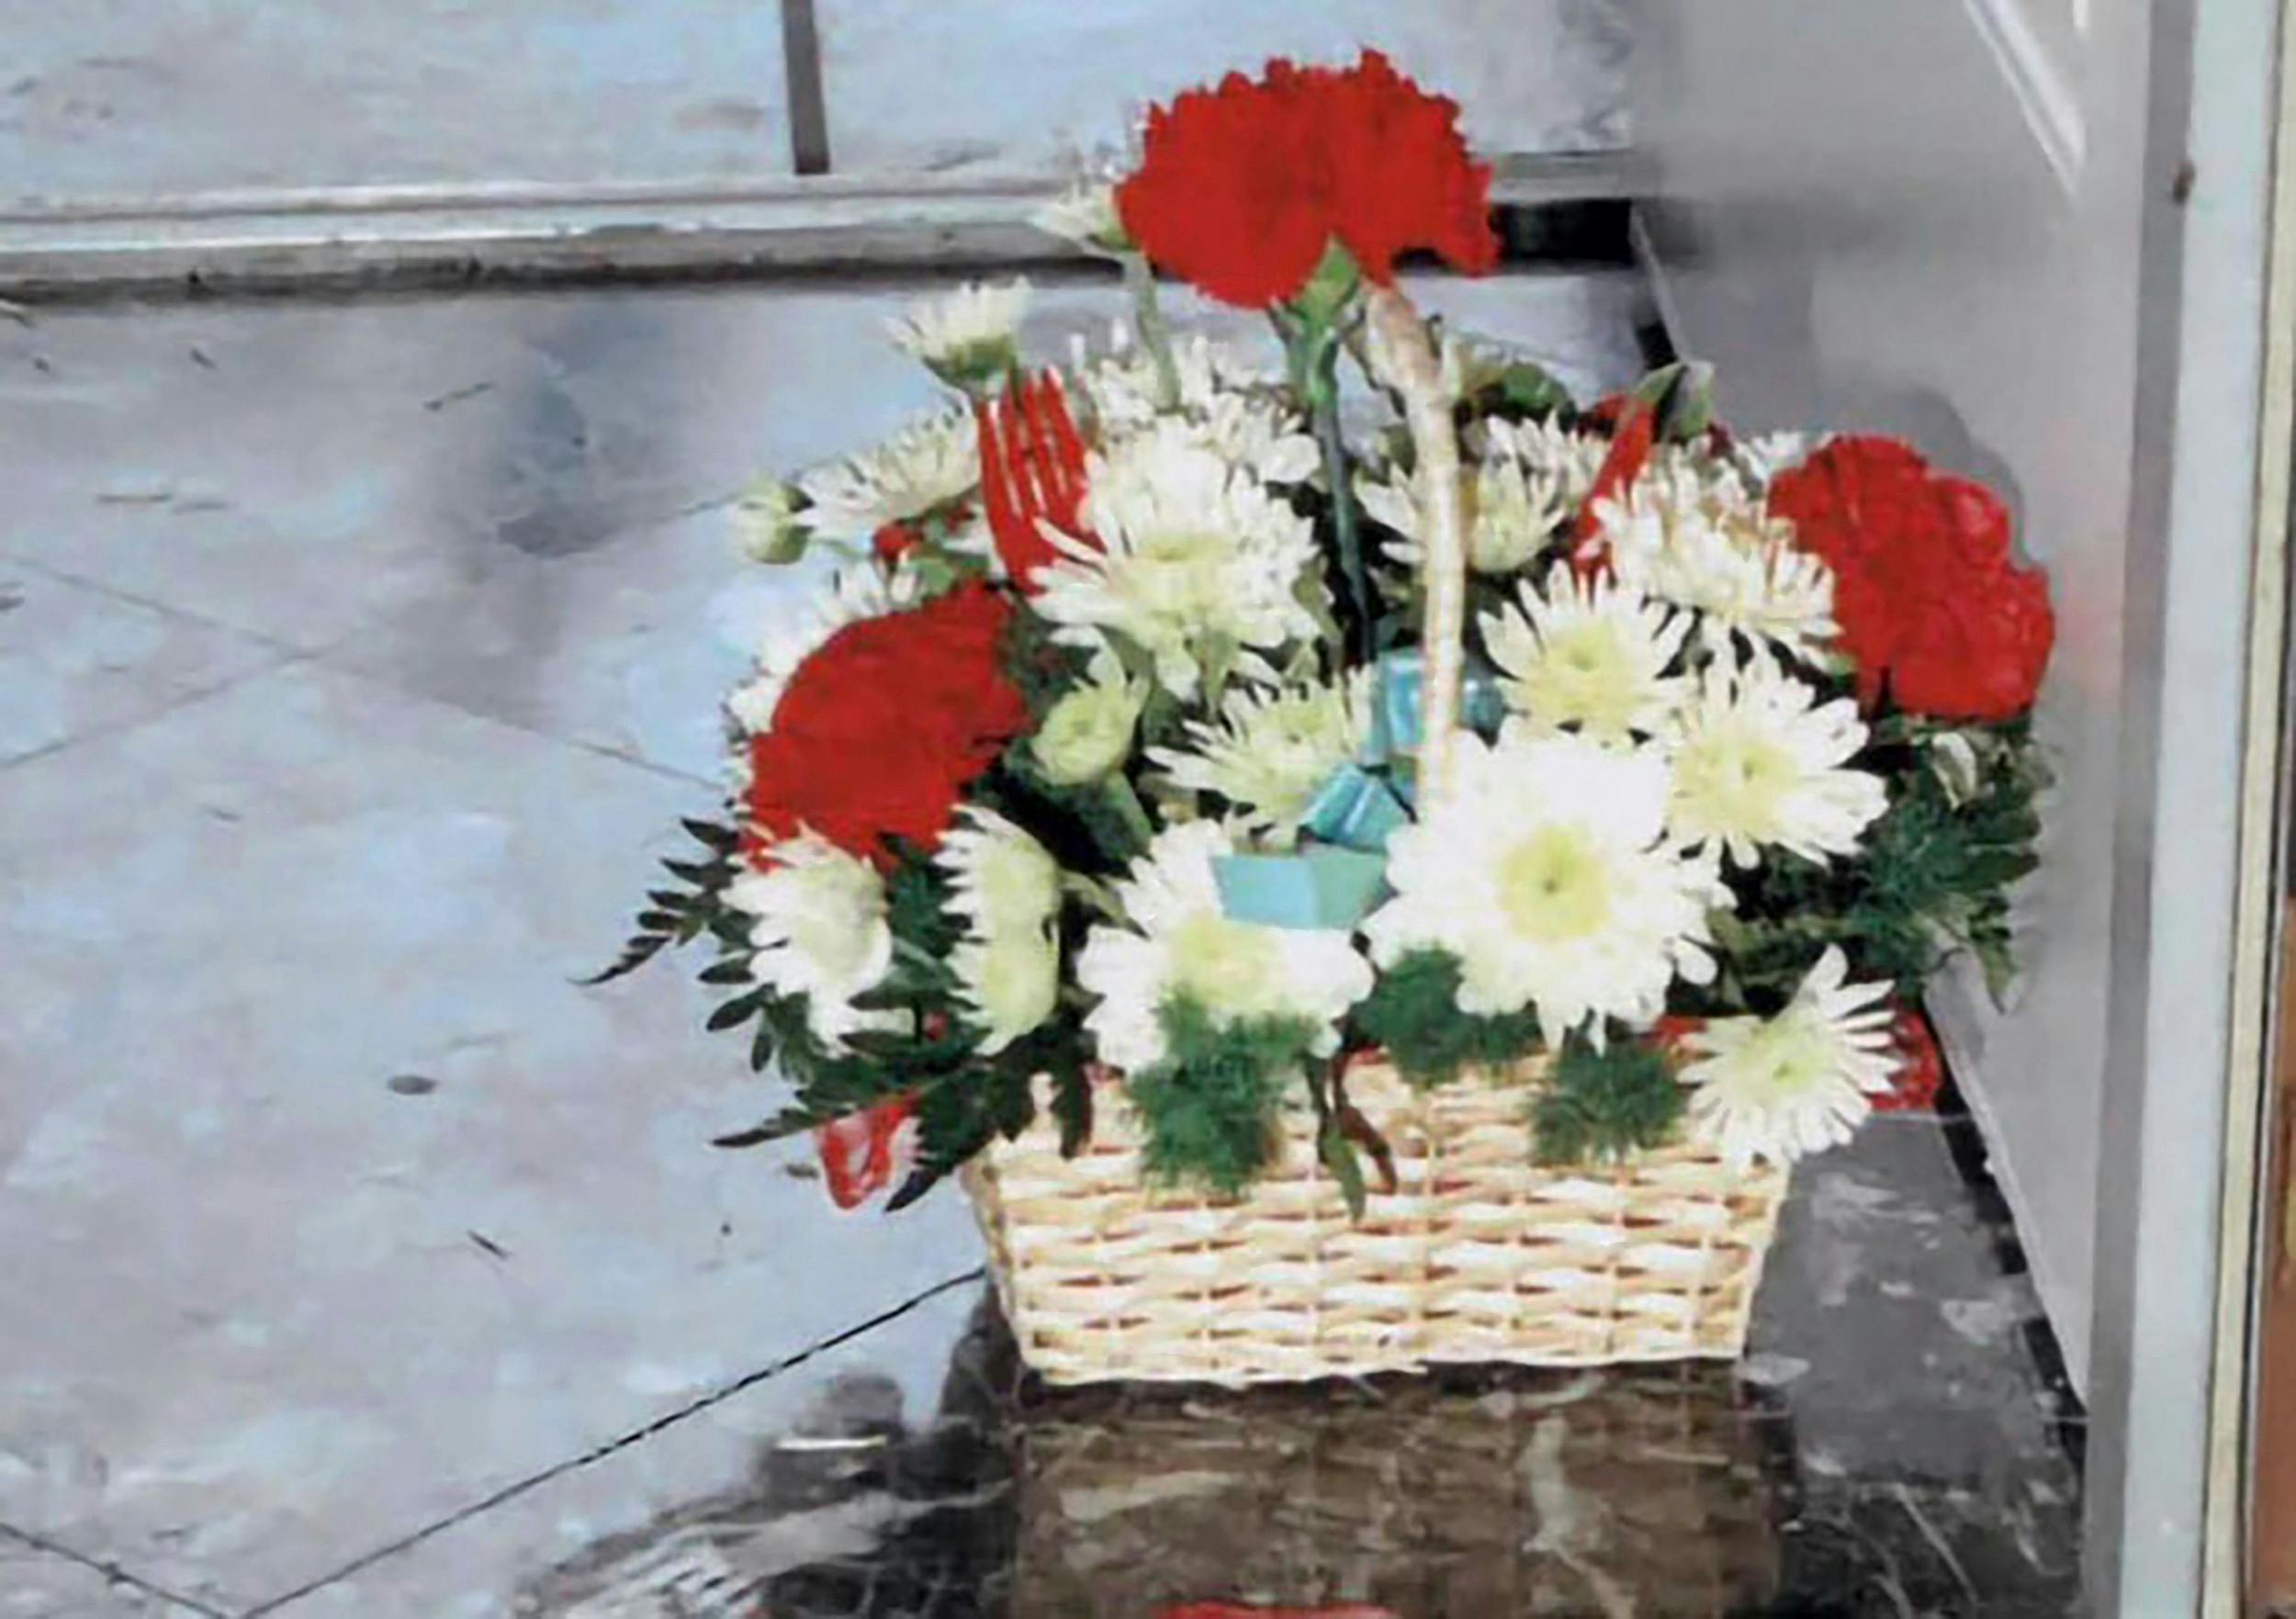 Den morderiske klovn efterlod sin kurv med blomster ved siden af sit offer.